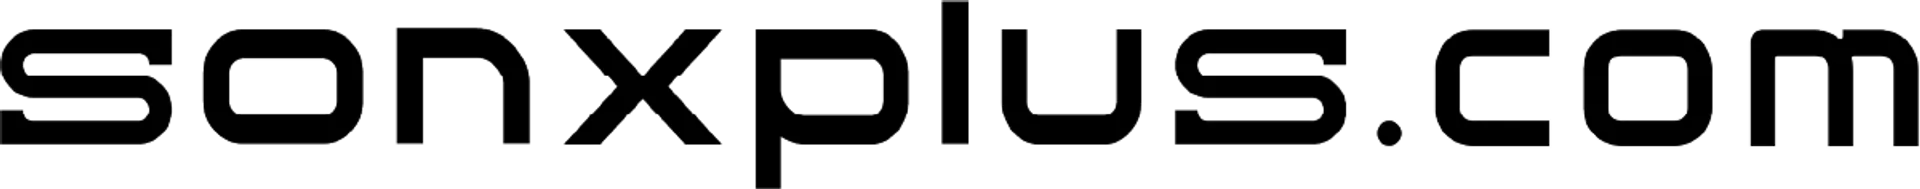 SON X PLUS logo de circulaires